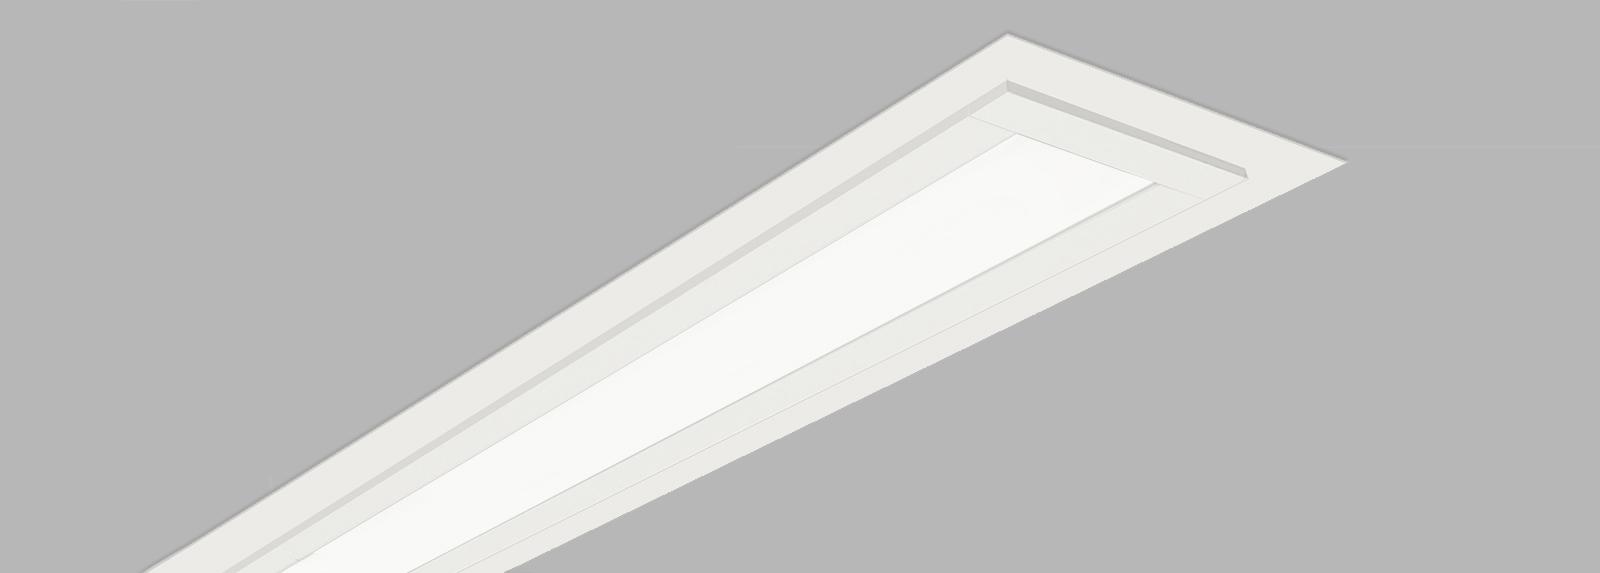 DRAK 100 | Lineare Einbau-Downlights zum Austausch der Beleuchtung